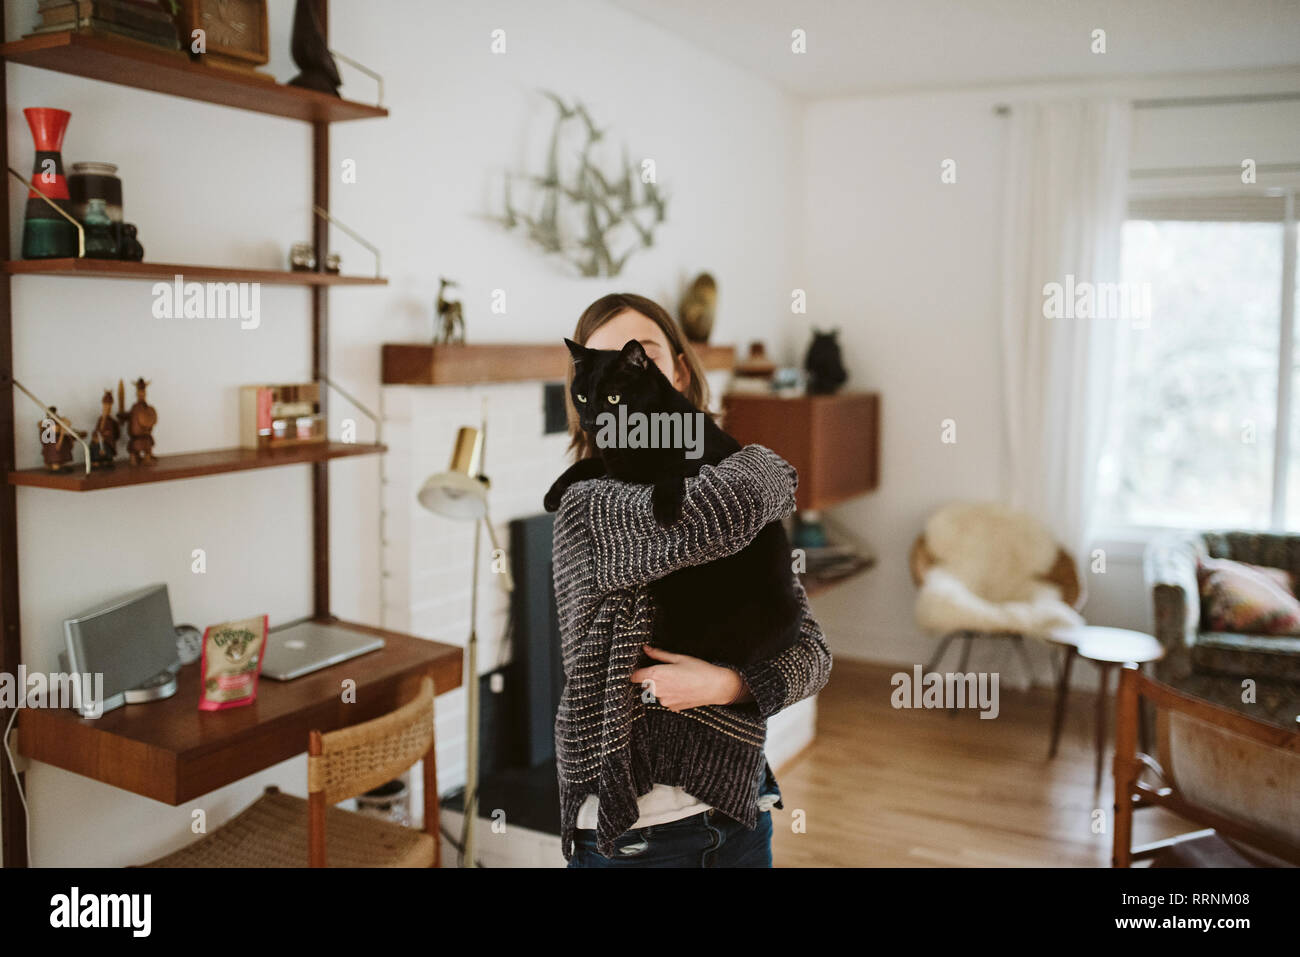 Girl holding black cat in living room Stock Photo